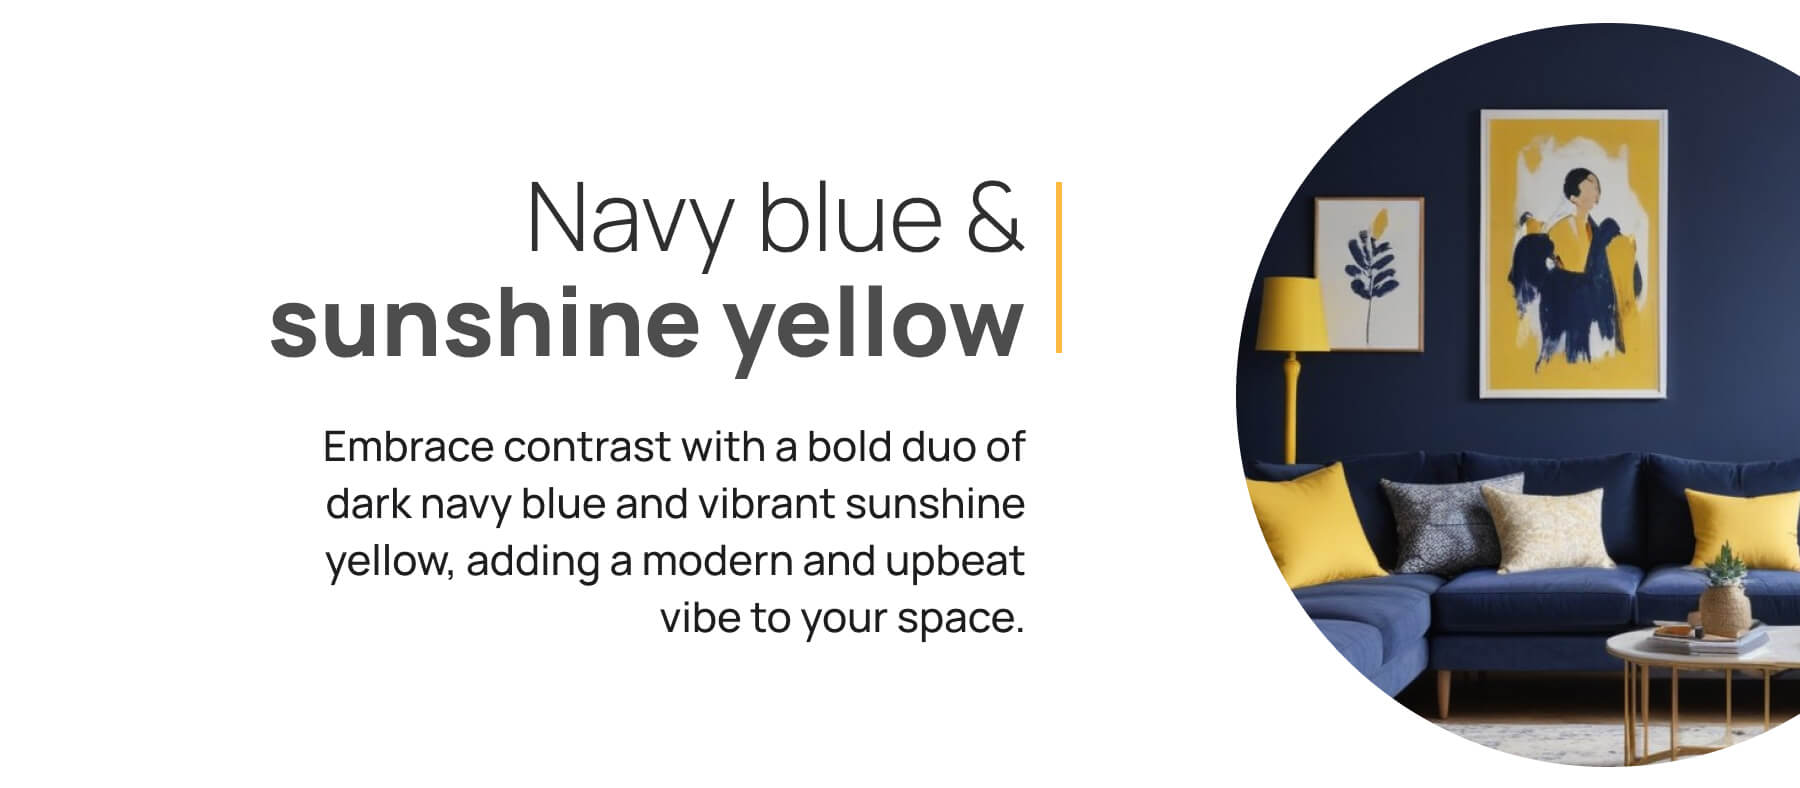 Navy blue & sunshine yellow